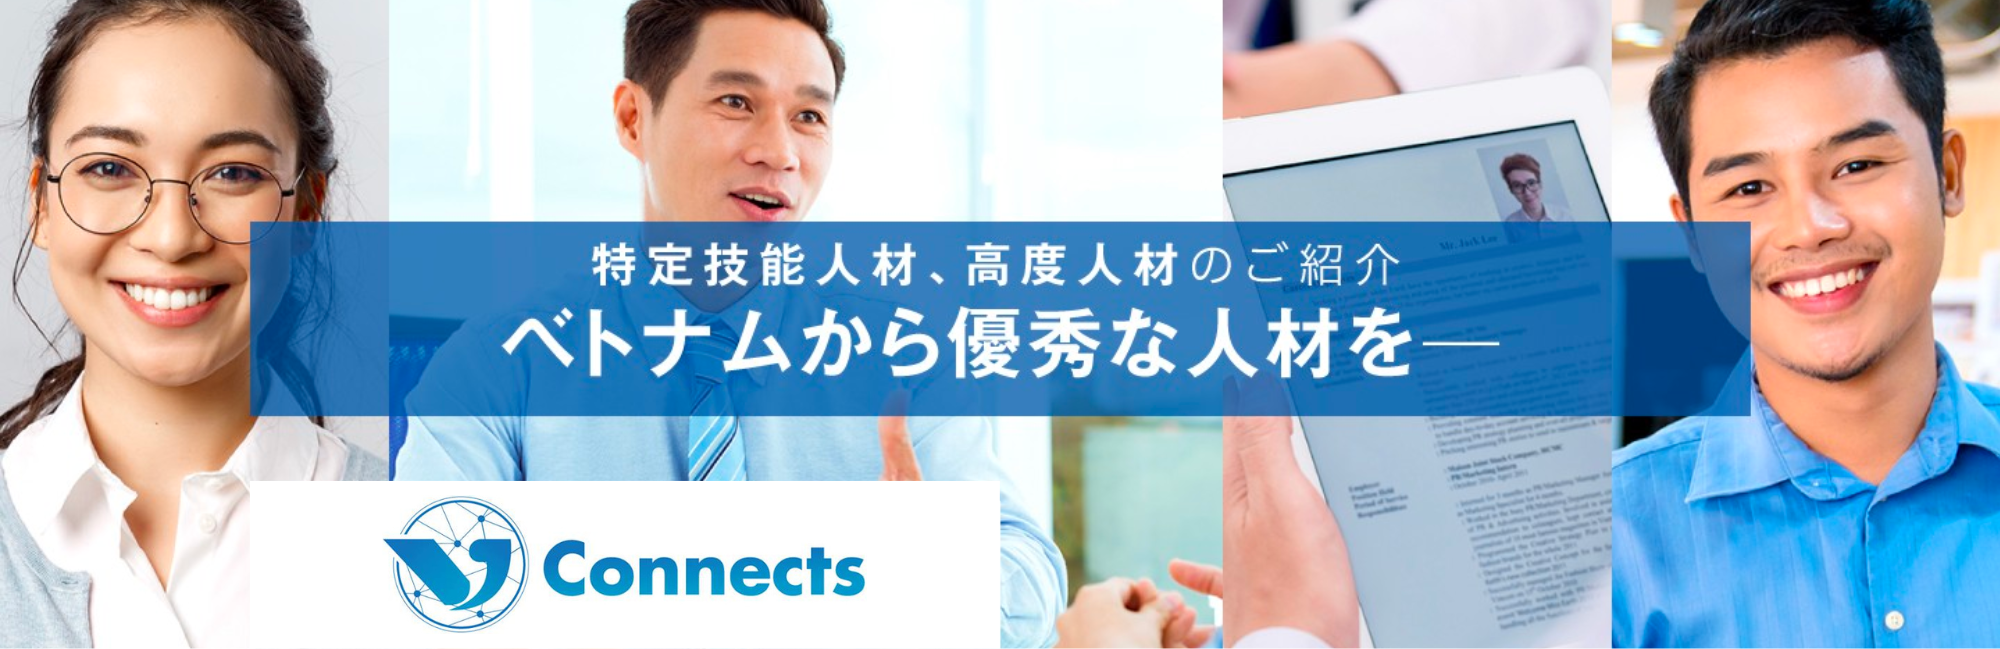 VJ Connect - Cơ hội kết nối việc làm Nhật Bản